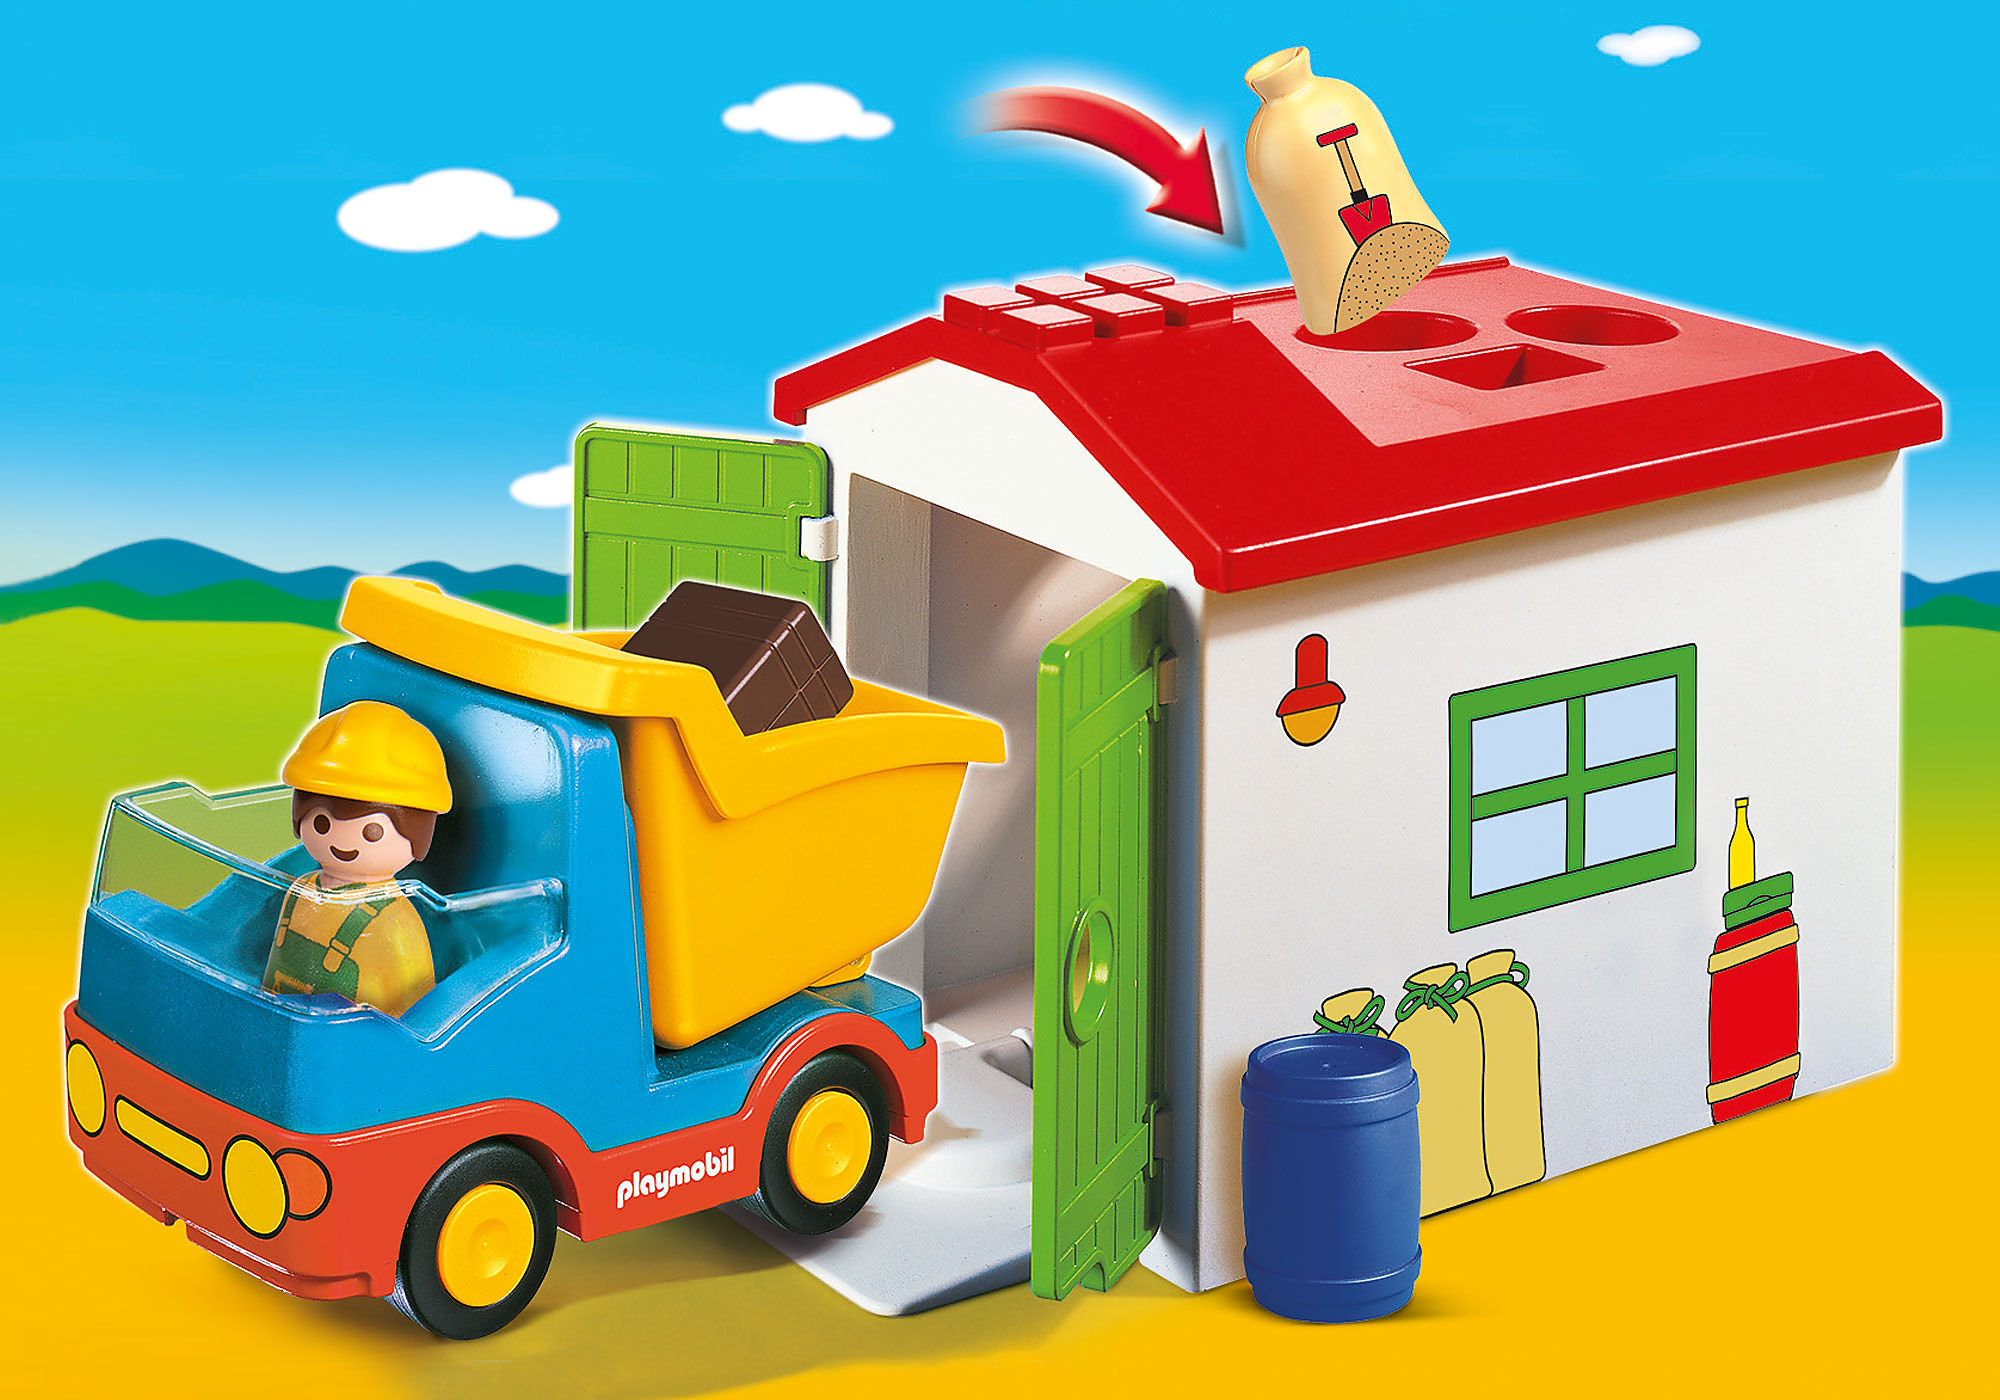 70184 - Playmobil 1.2.3 - Ouvrier avec camion et garage Playmobil : King  Jouet, Playmobil Playmobil - Jeux d'imitation & Mondes imaginaires